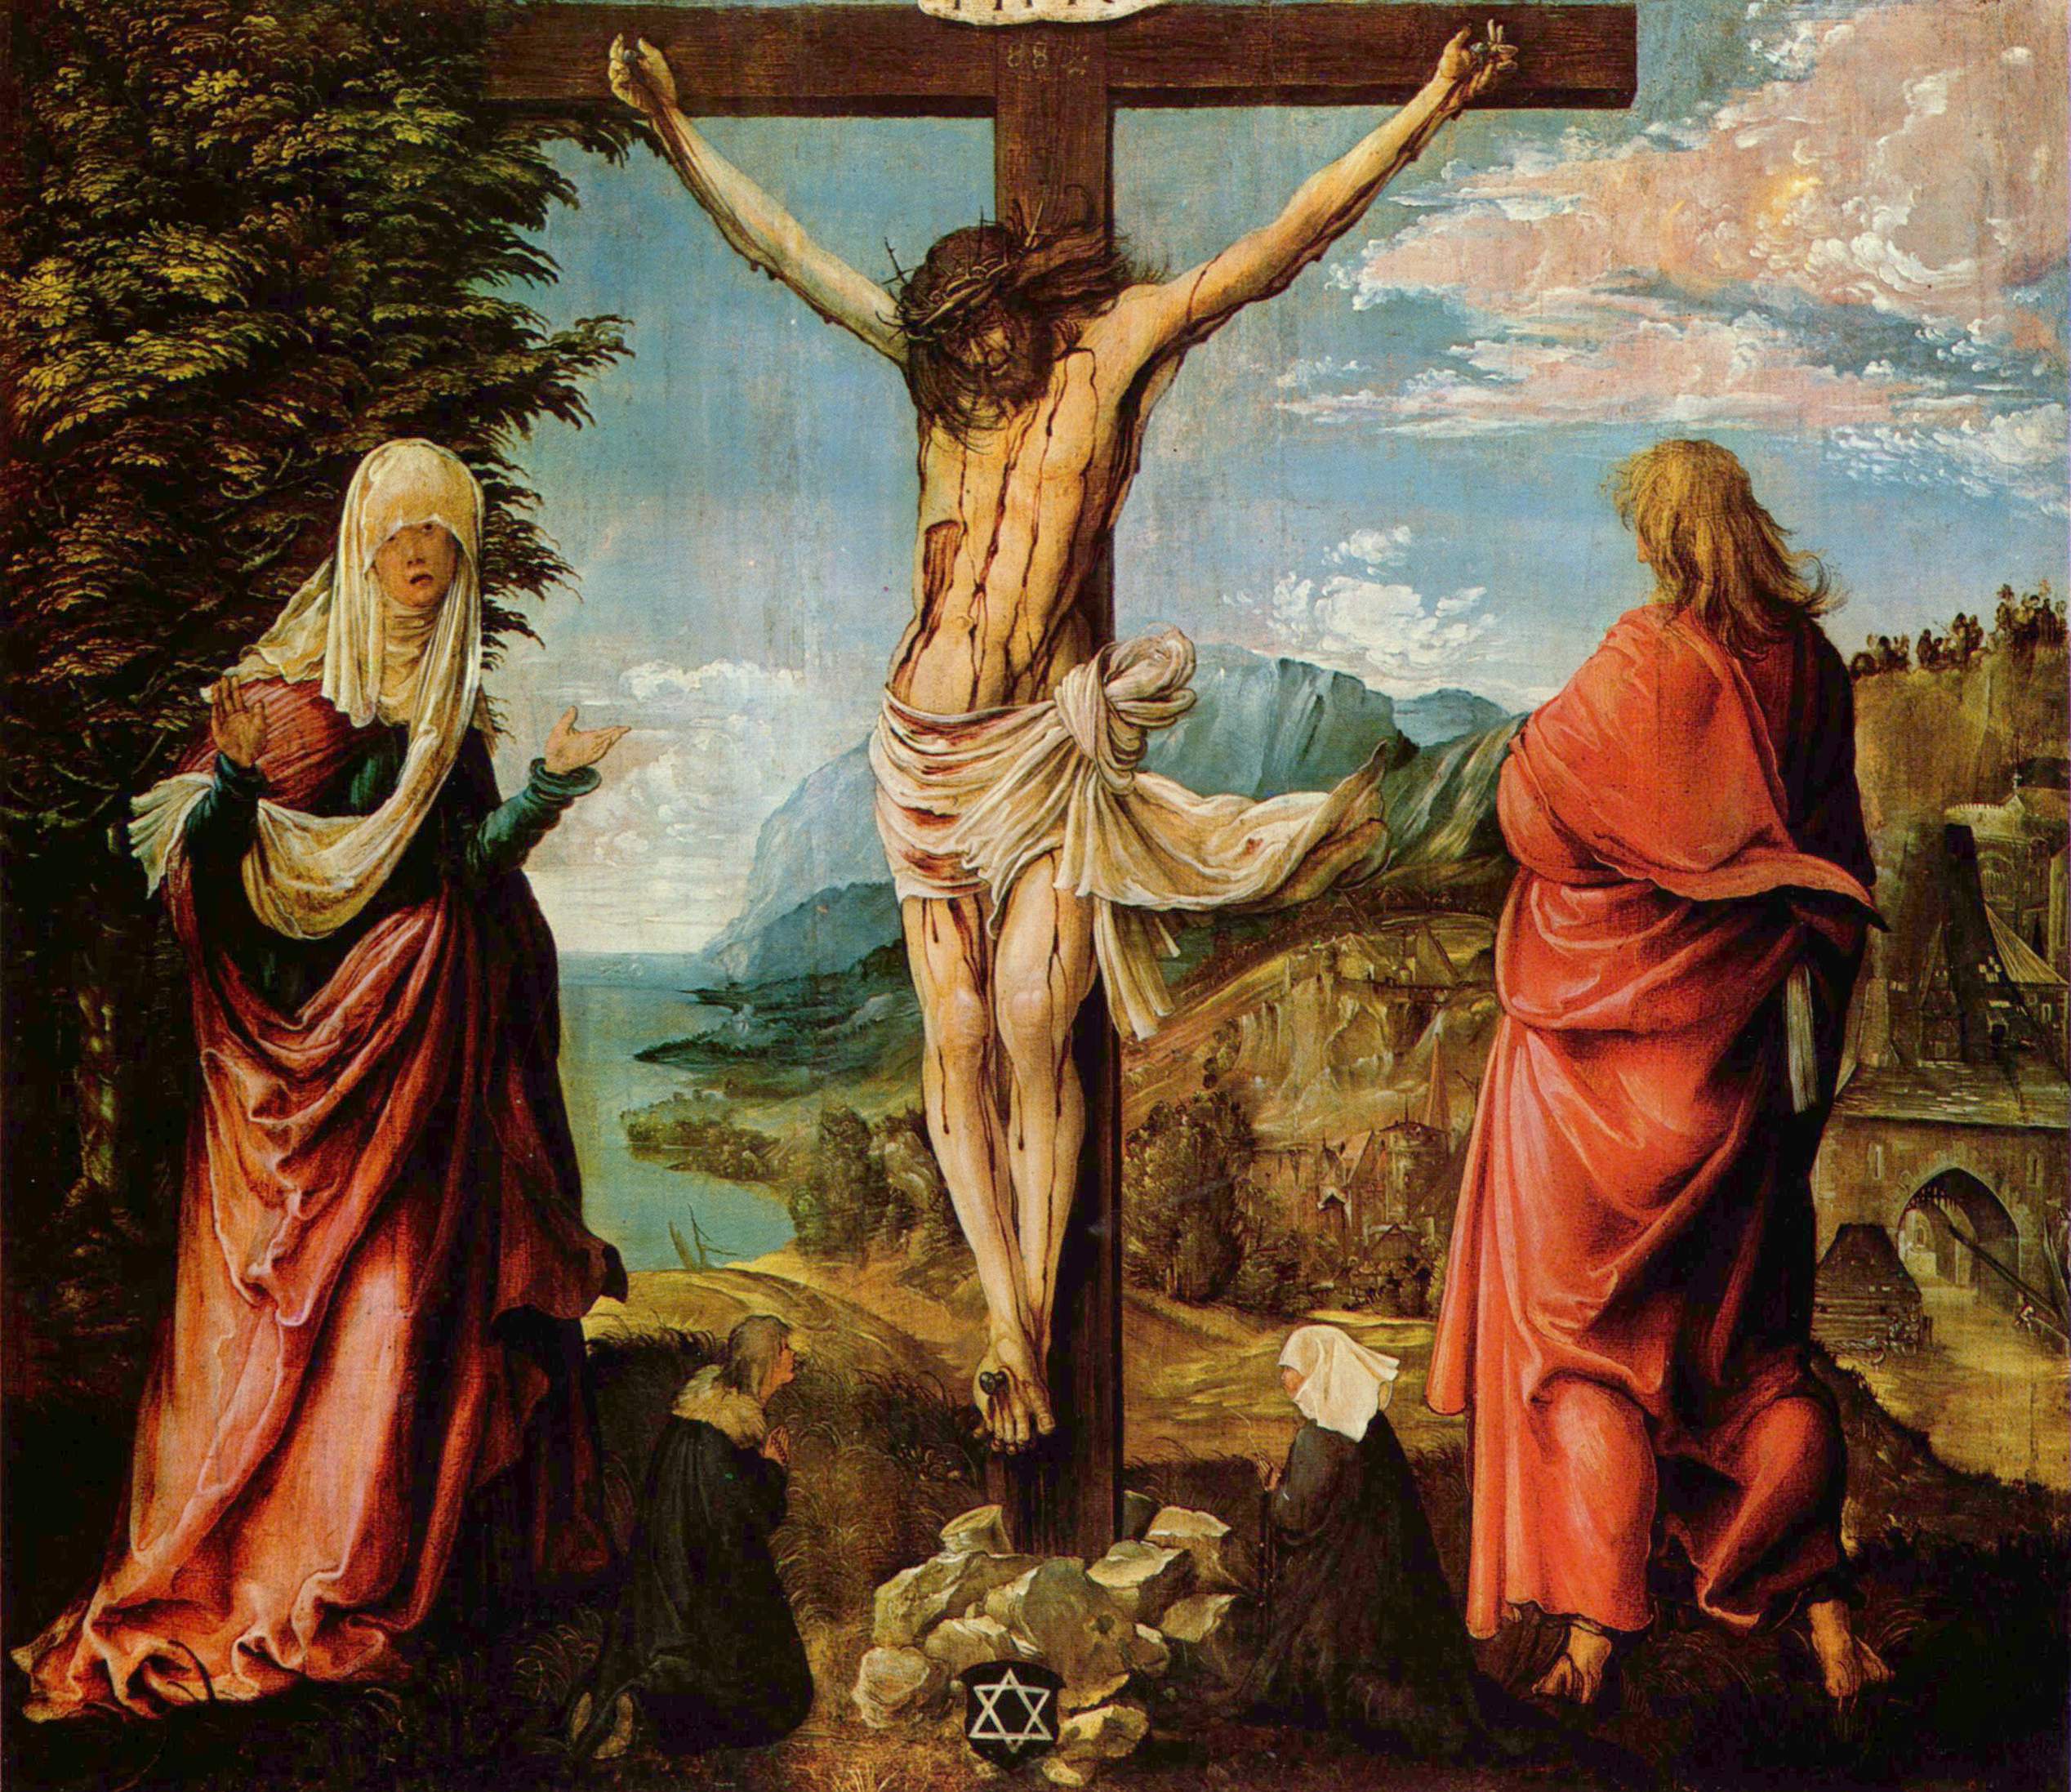 А. Альтдорфер. Распятие. Христос на кресте, Мария и Иоанн. 1515-1516.                                    .